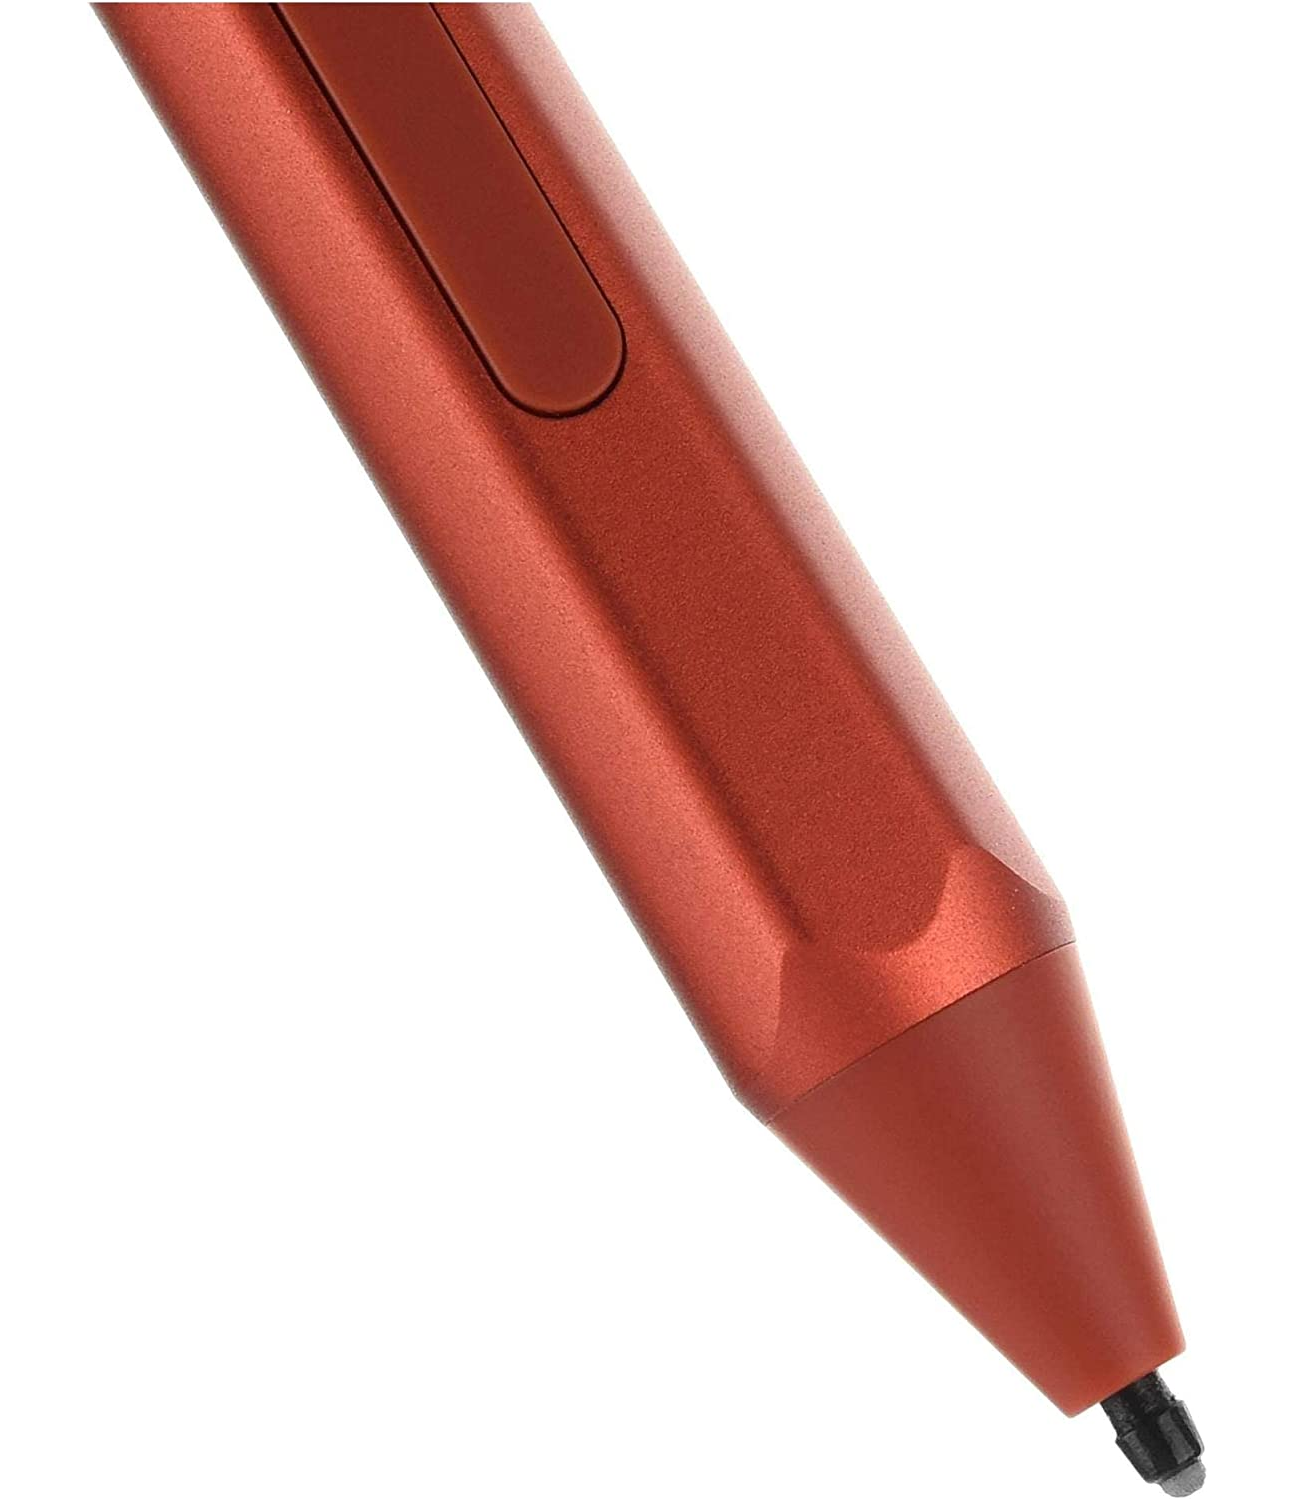 Microsoft Surface Pen, Poppy Red EYU-00048